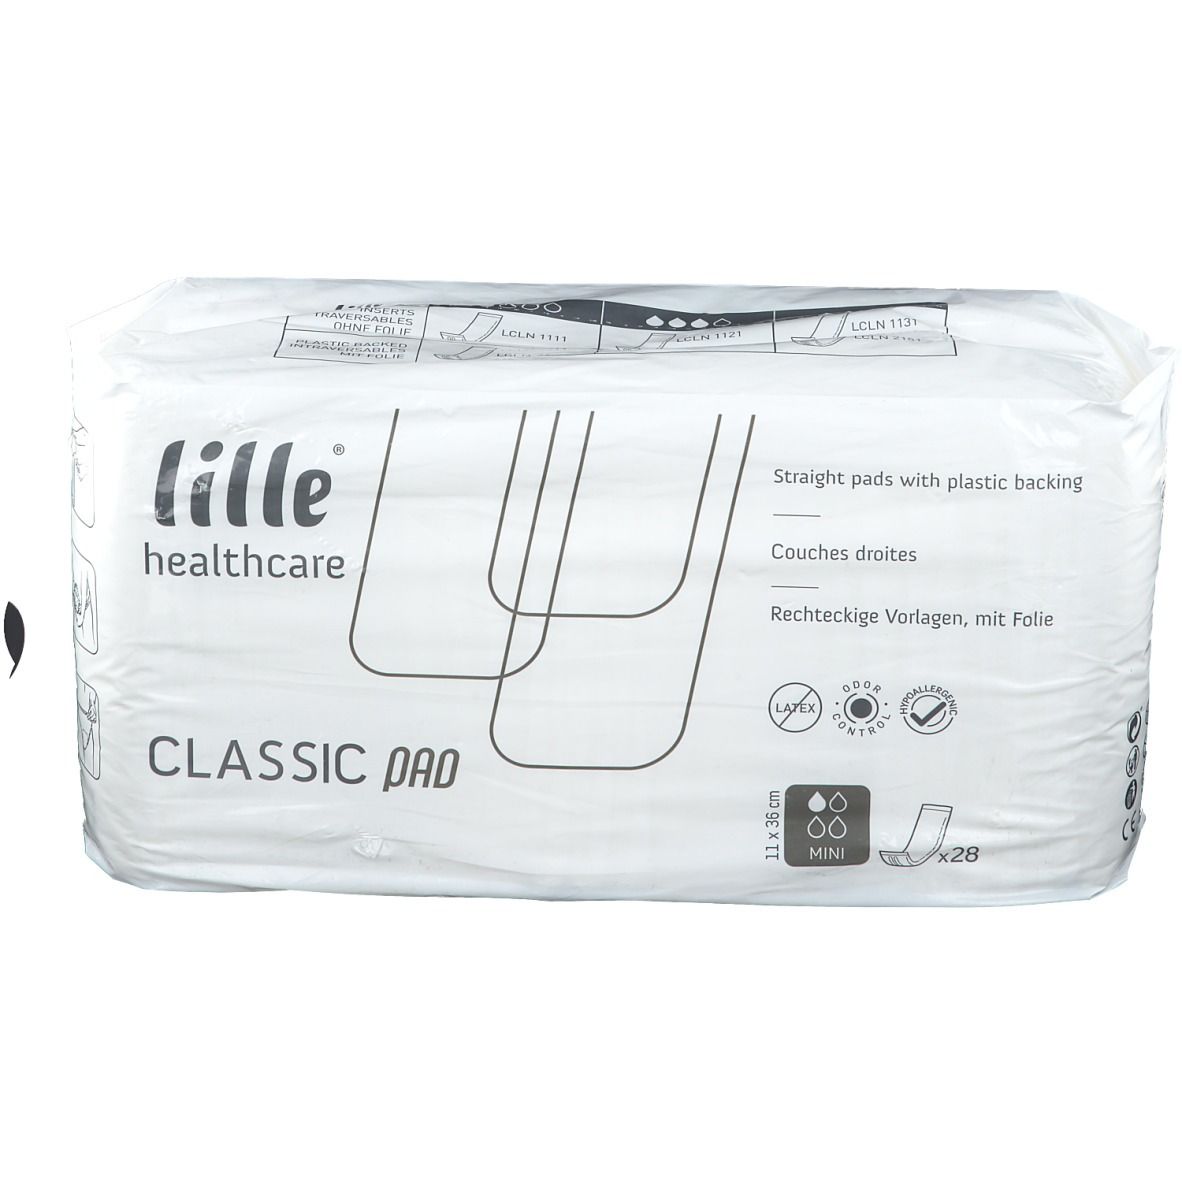 lille® Healthcare Classic Pad Mini 11 x 36 cm